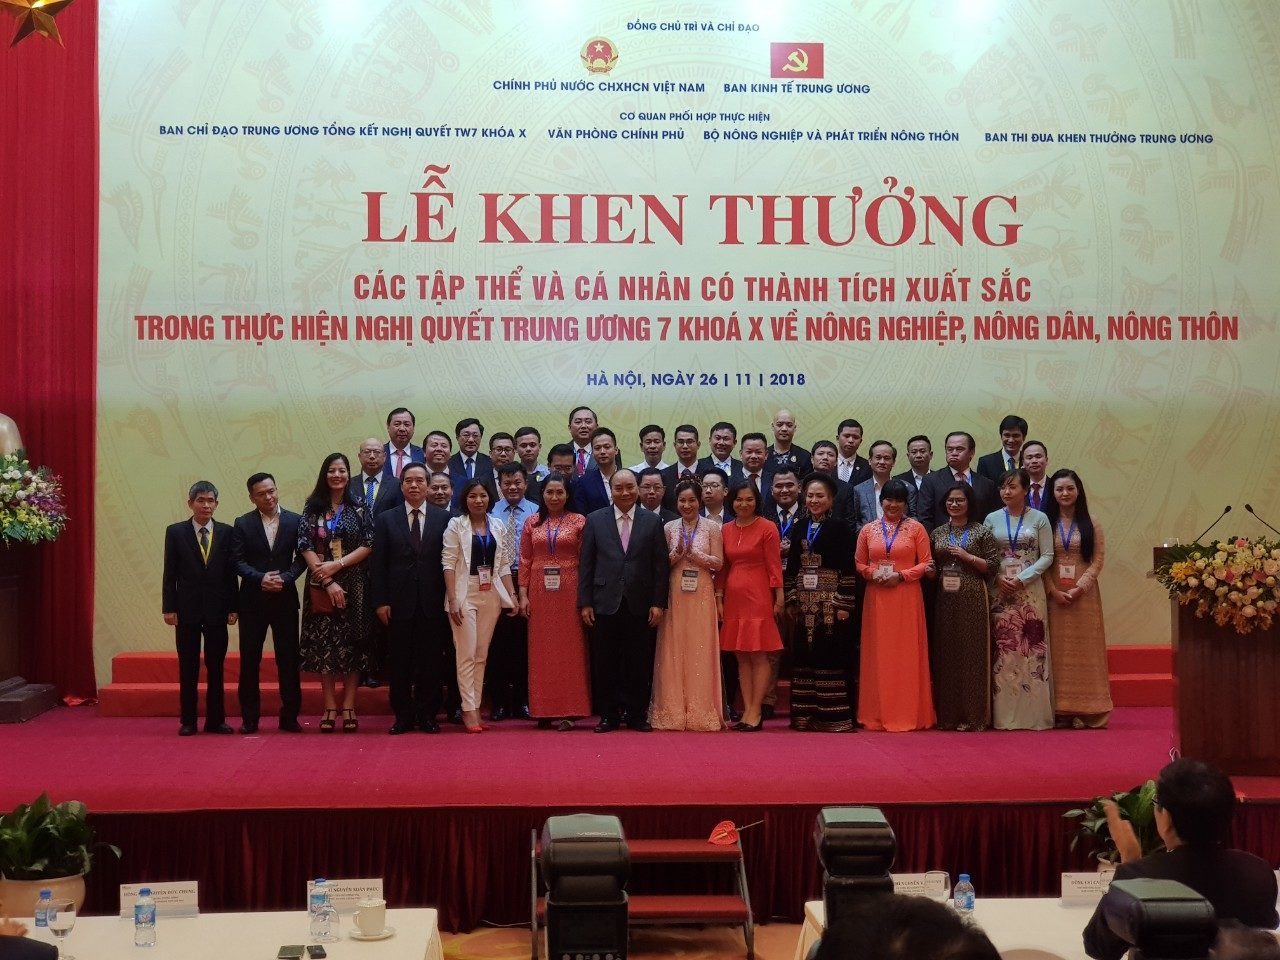 CEO Nextfarm ông Trần Quang Cường, áo vest xanh, hàng thứ hai, đứng ngay sau Thủ tướng Nguyễn Xuân Phúc